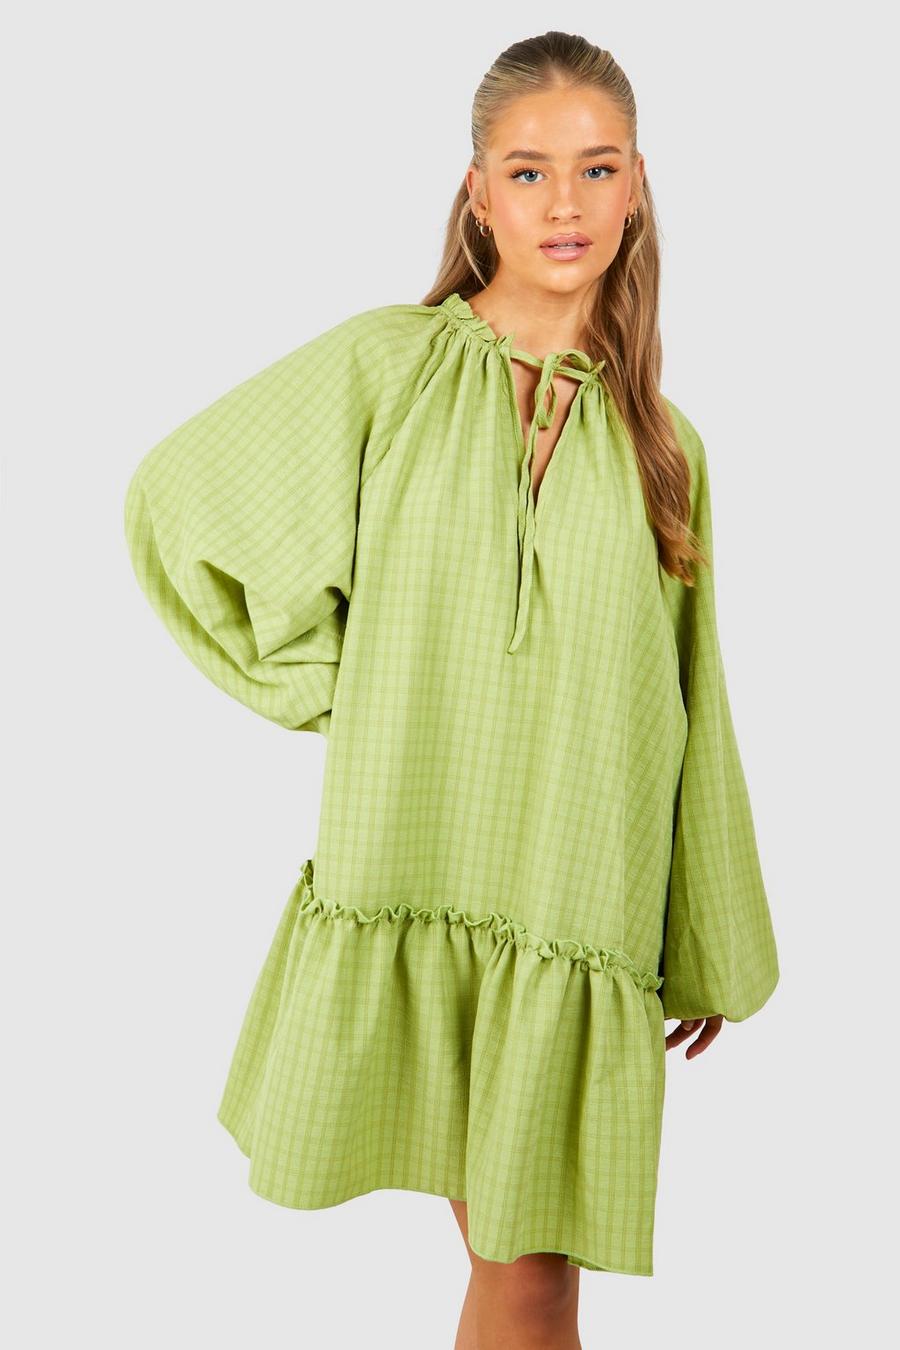 Robe babydoll texturée nouée, Chartreuse